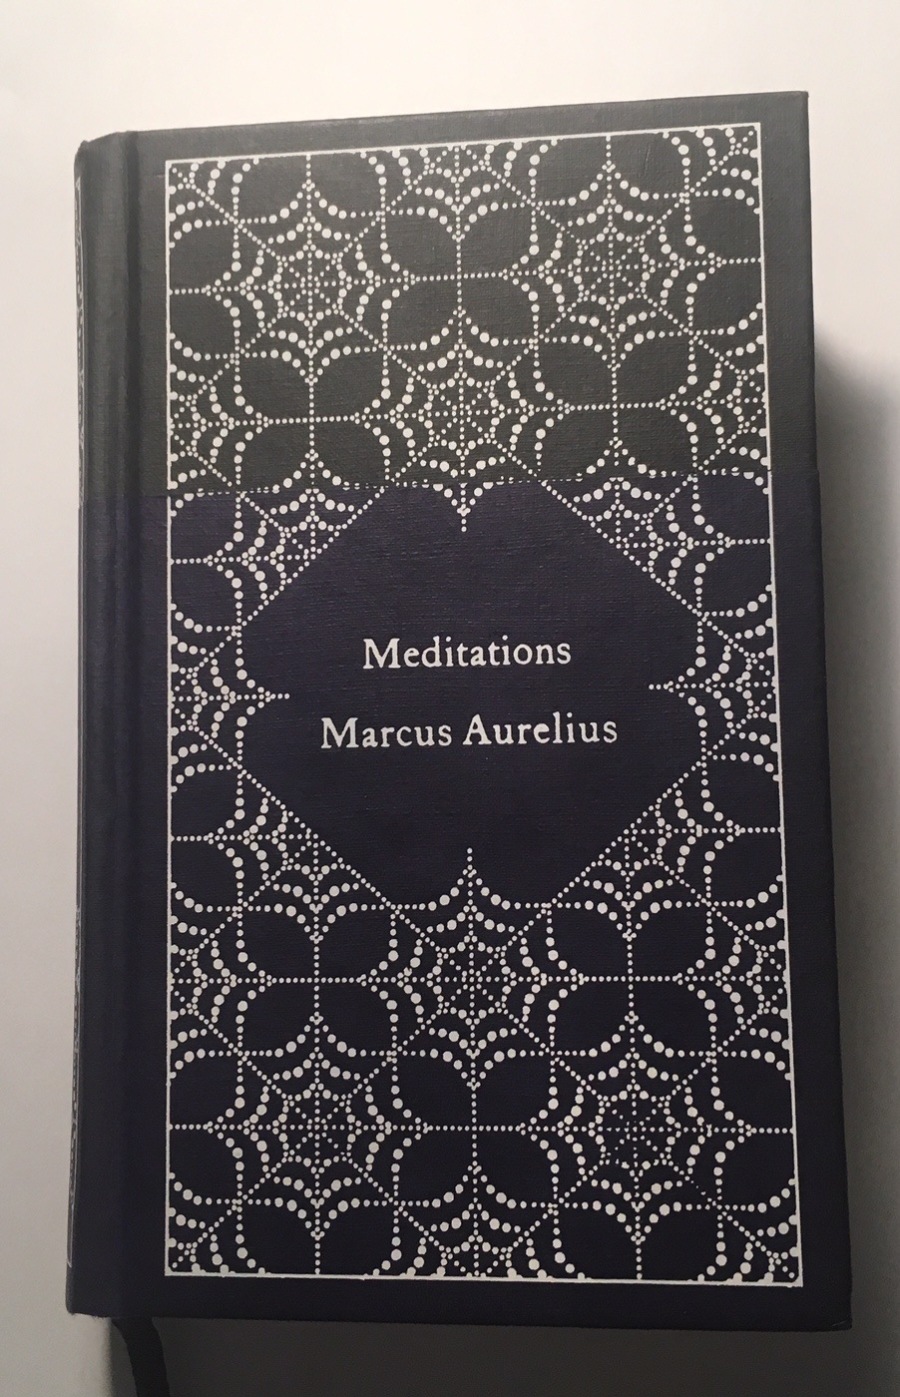 Meditations

Marcus Aurelius